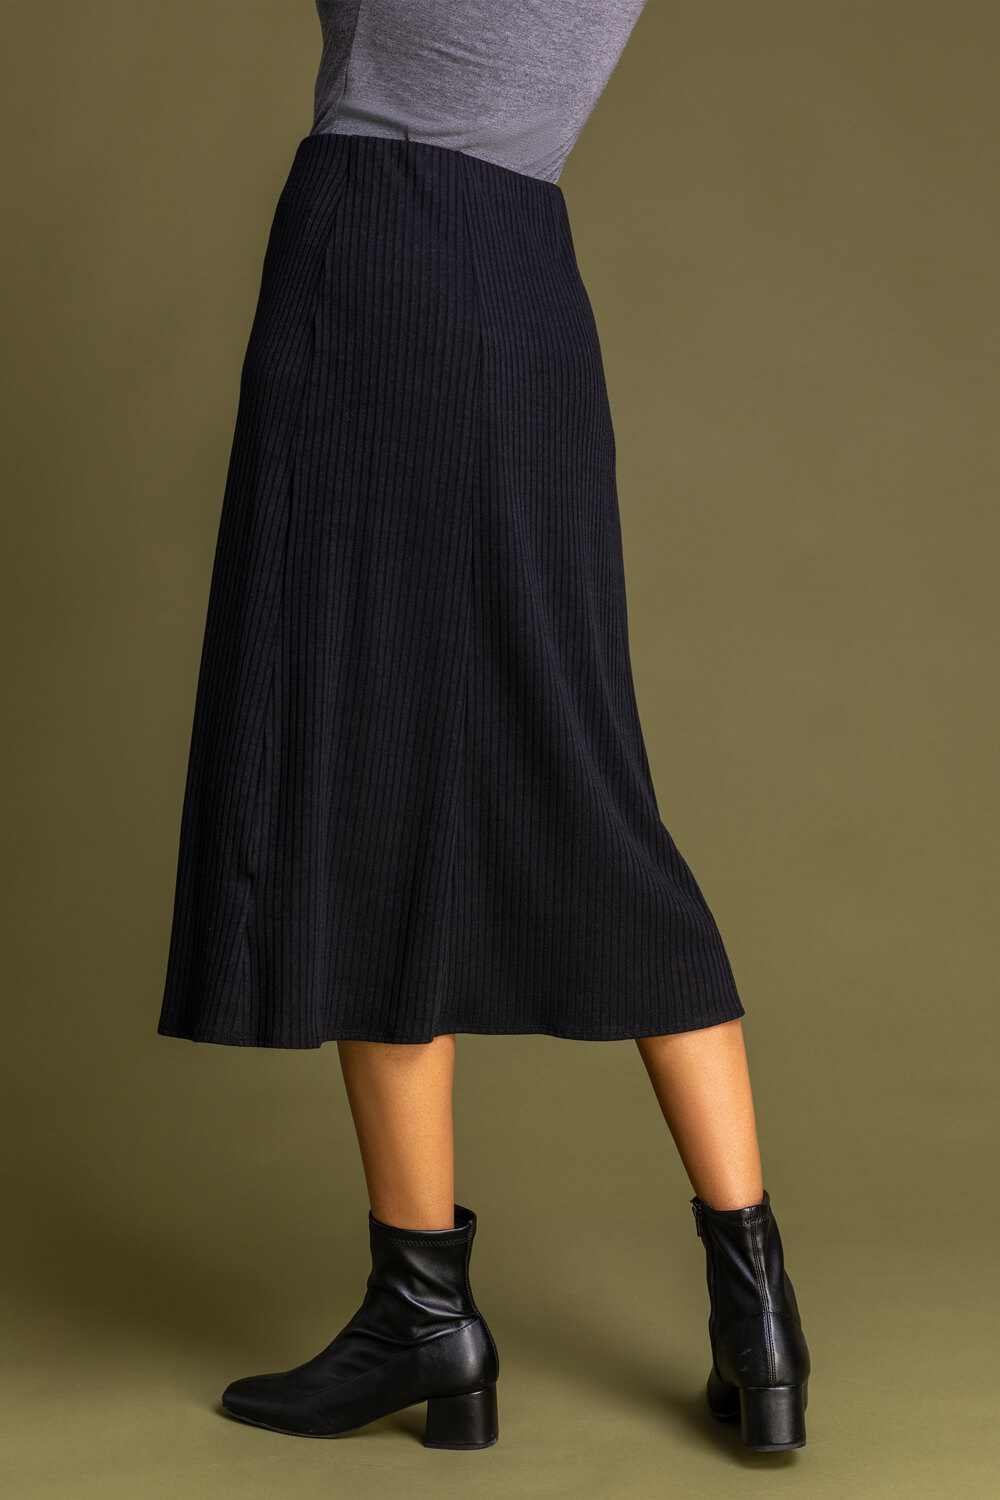 Ribbed Midi Length Skirt in Black - Roman Originals UK